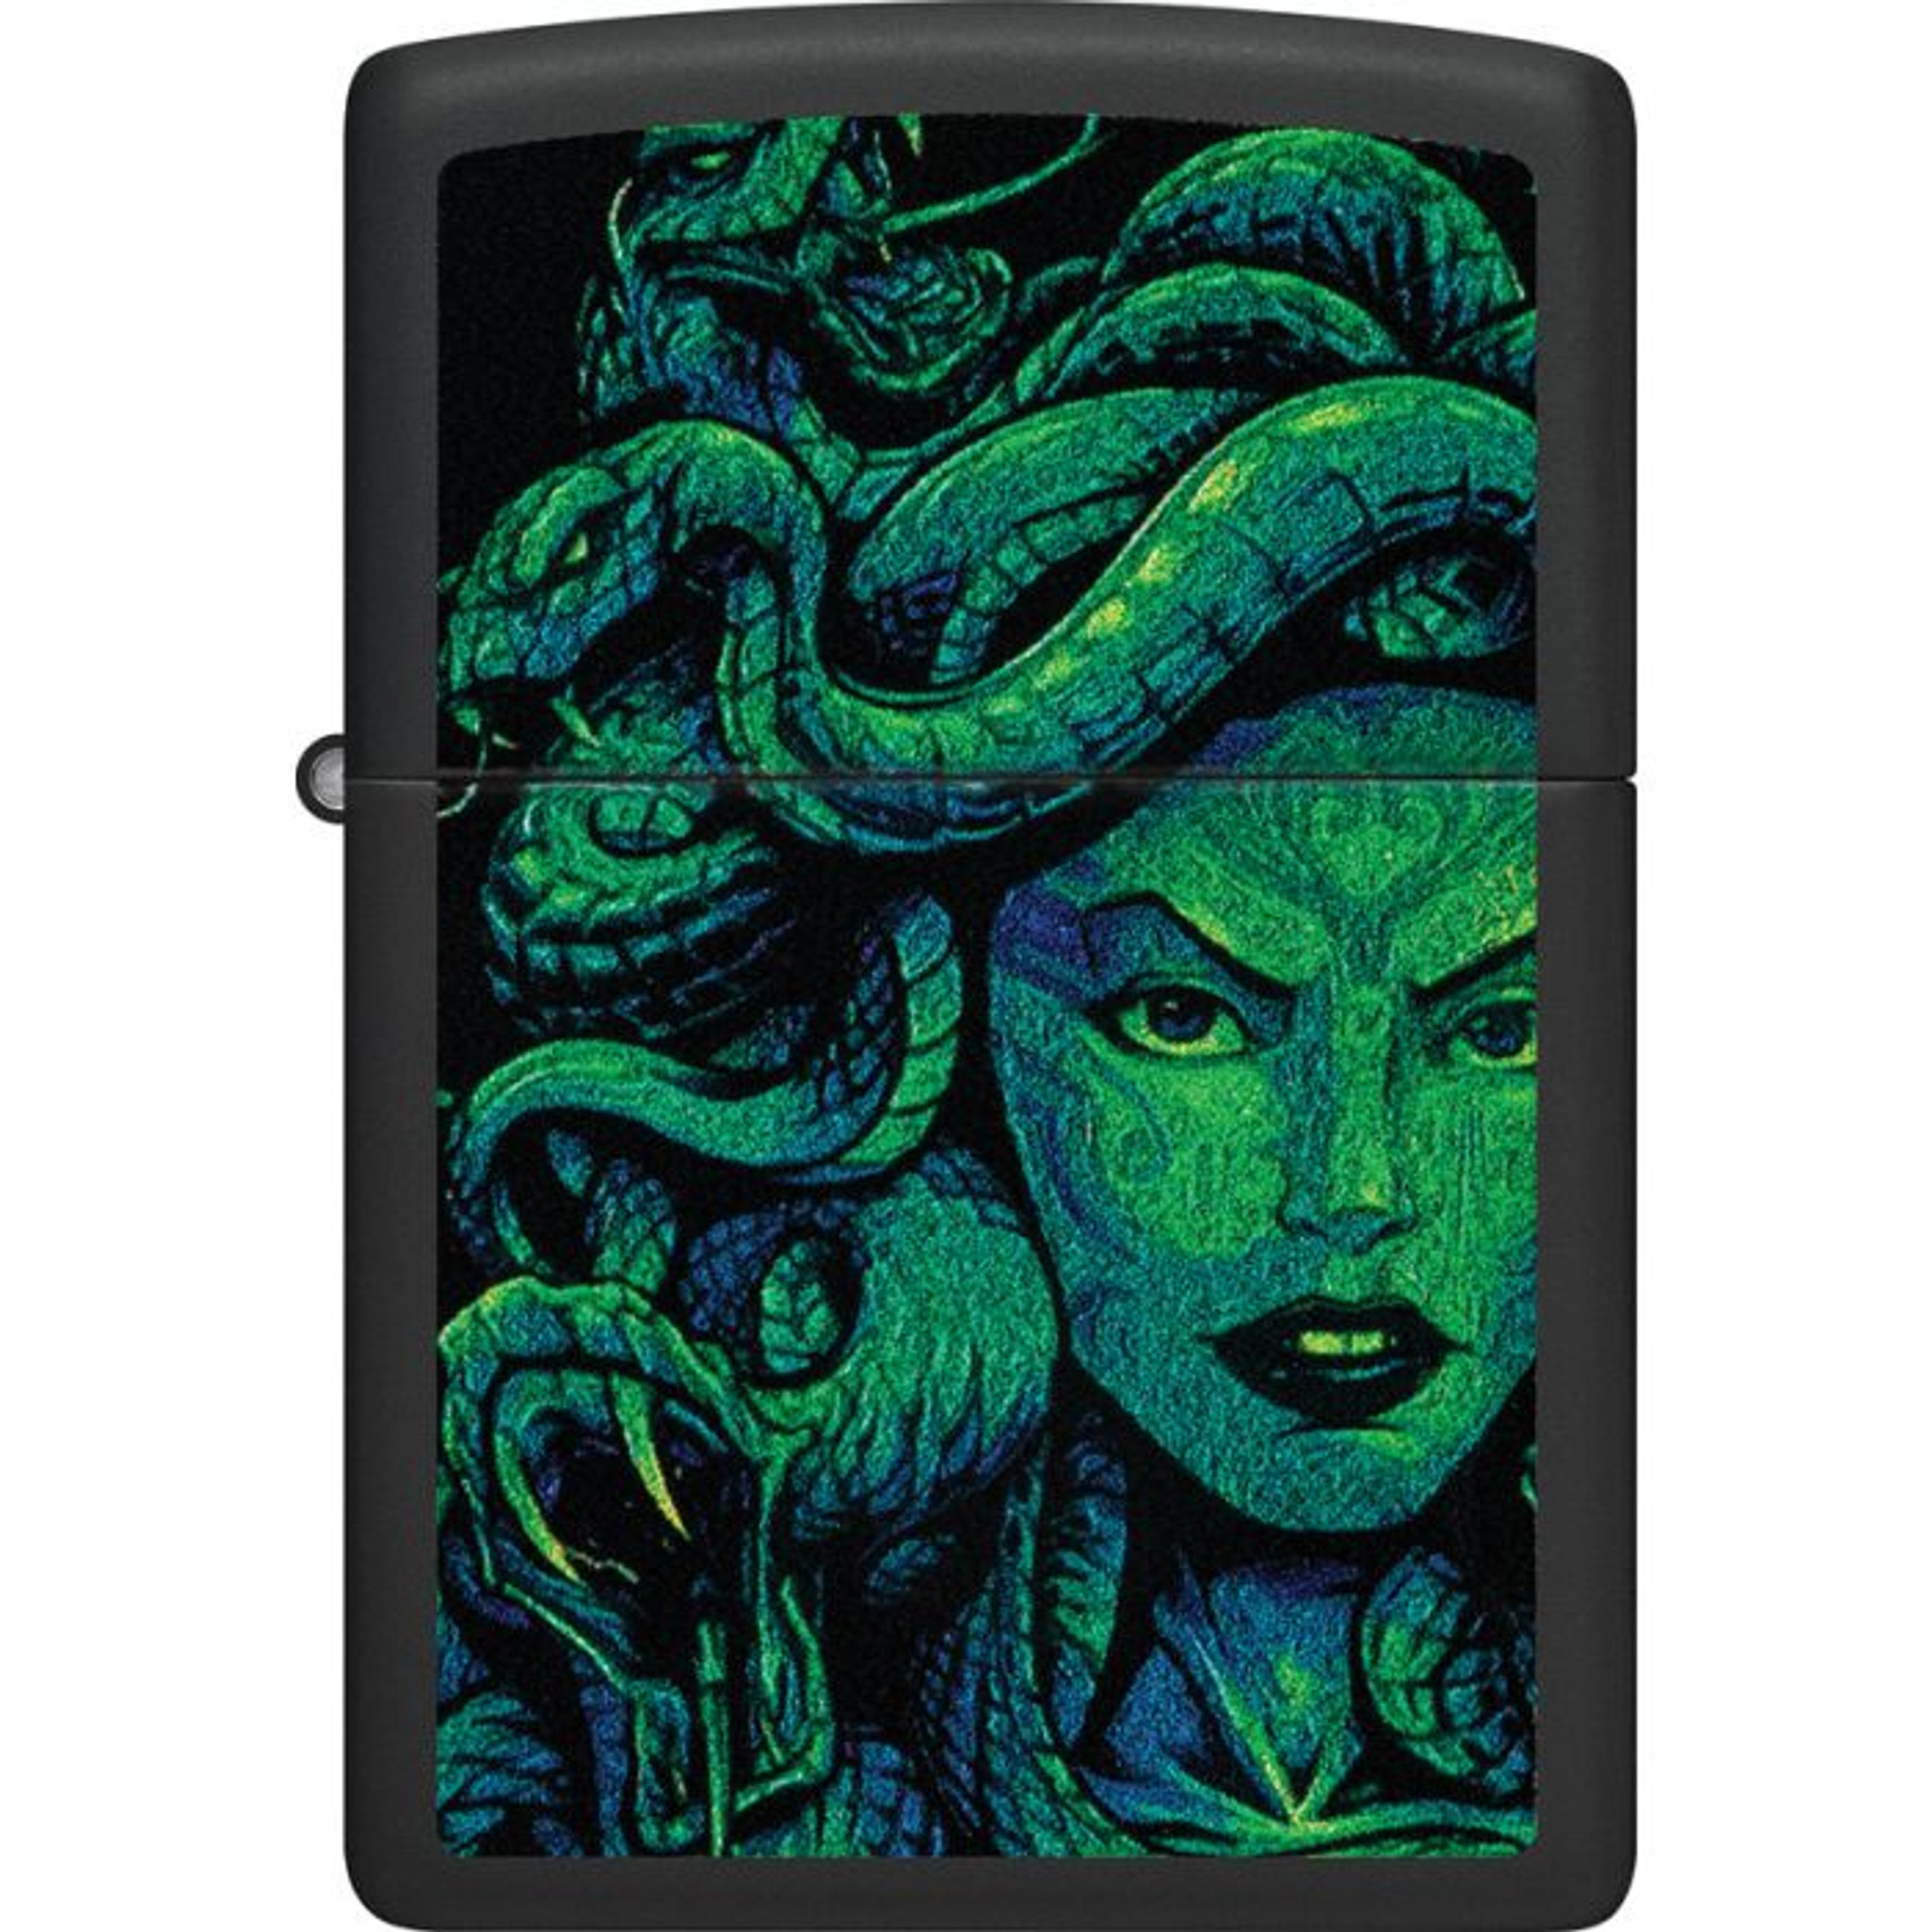 Medusa Design Lighter